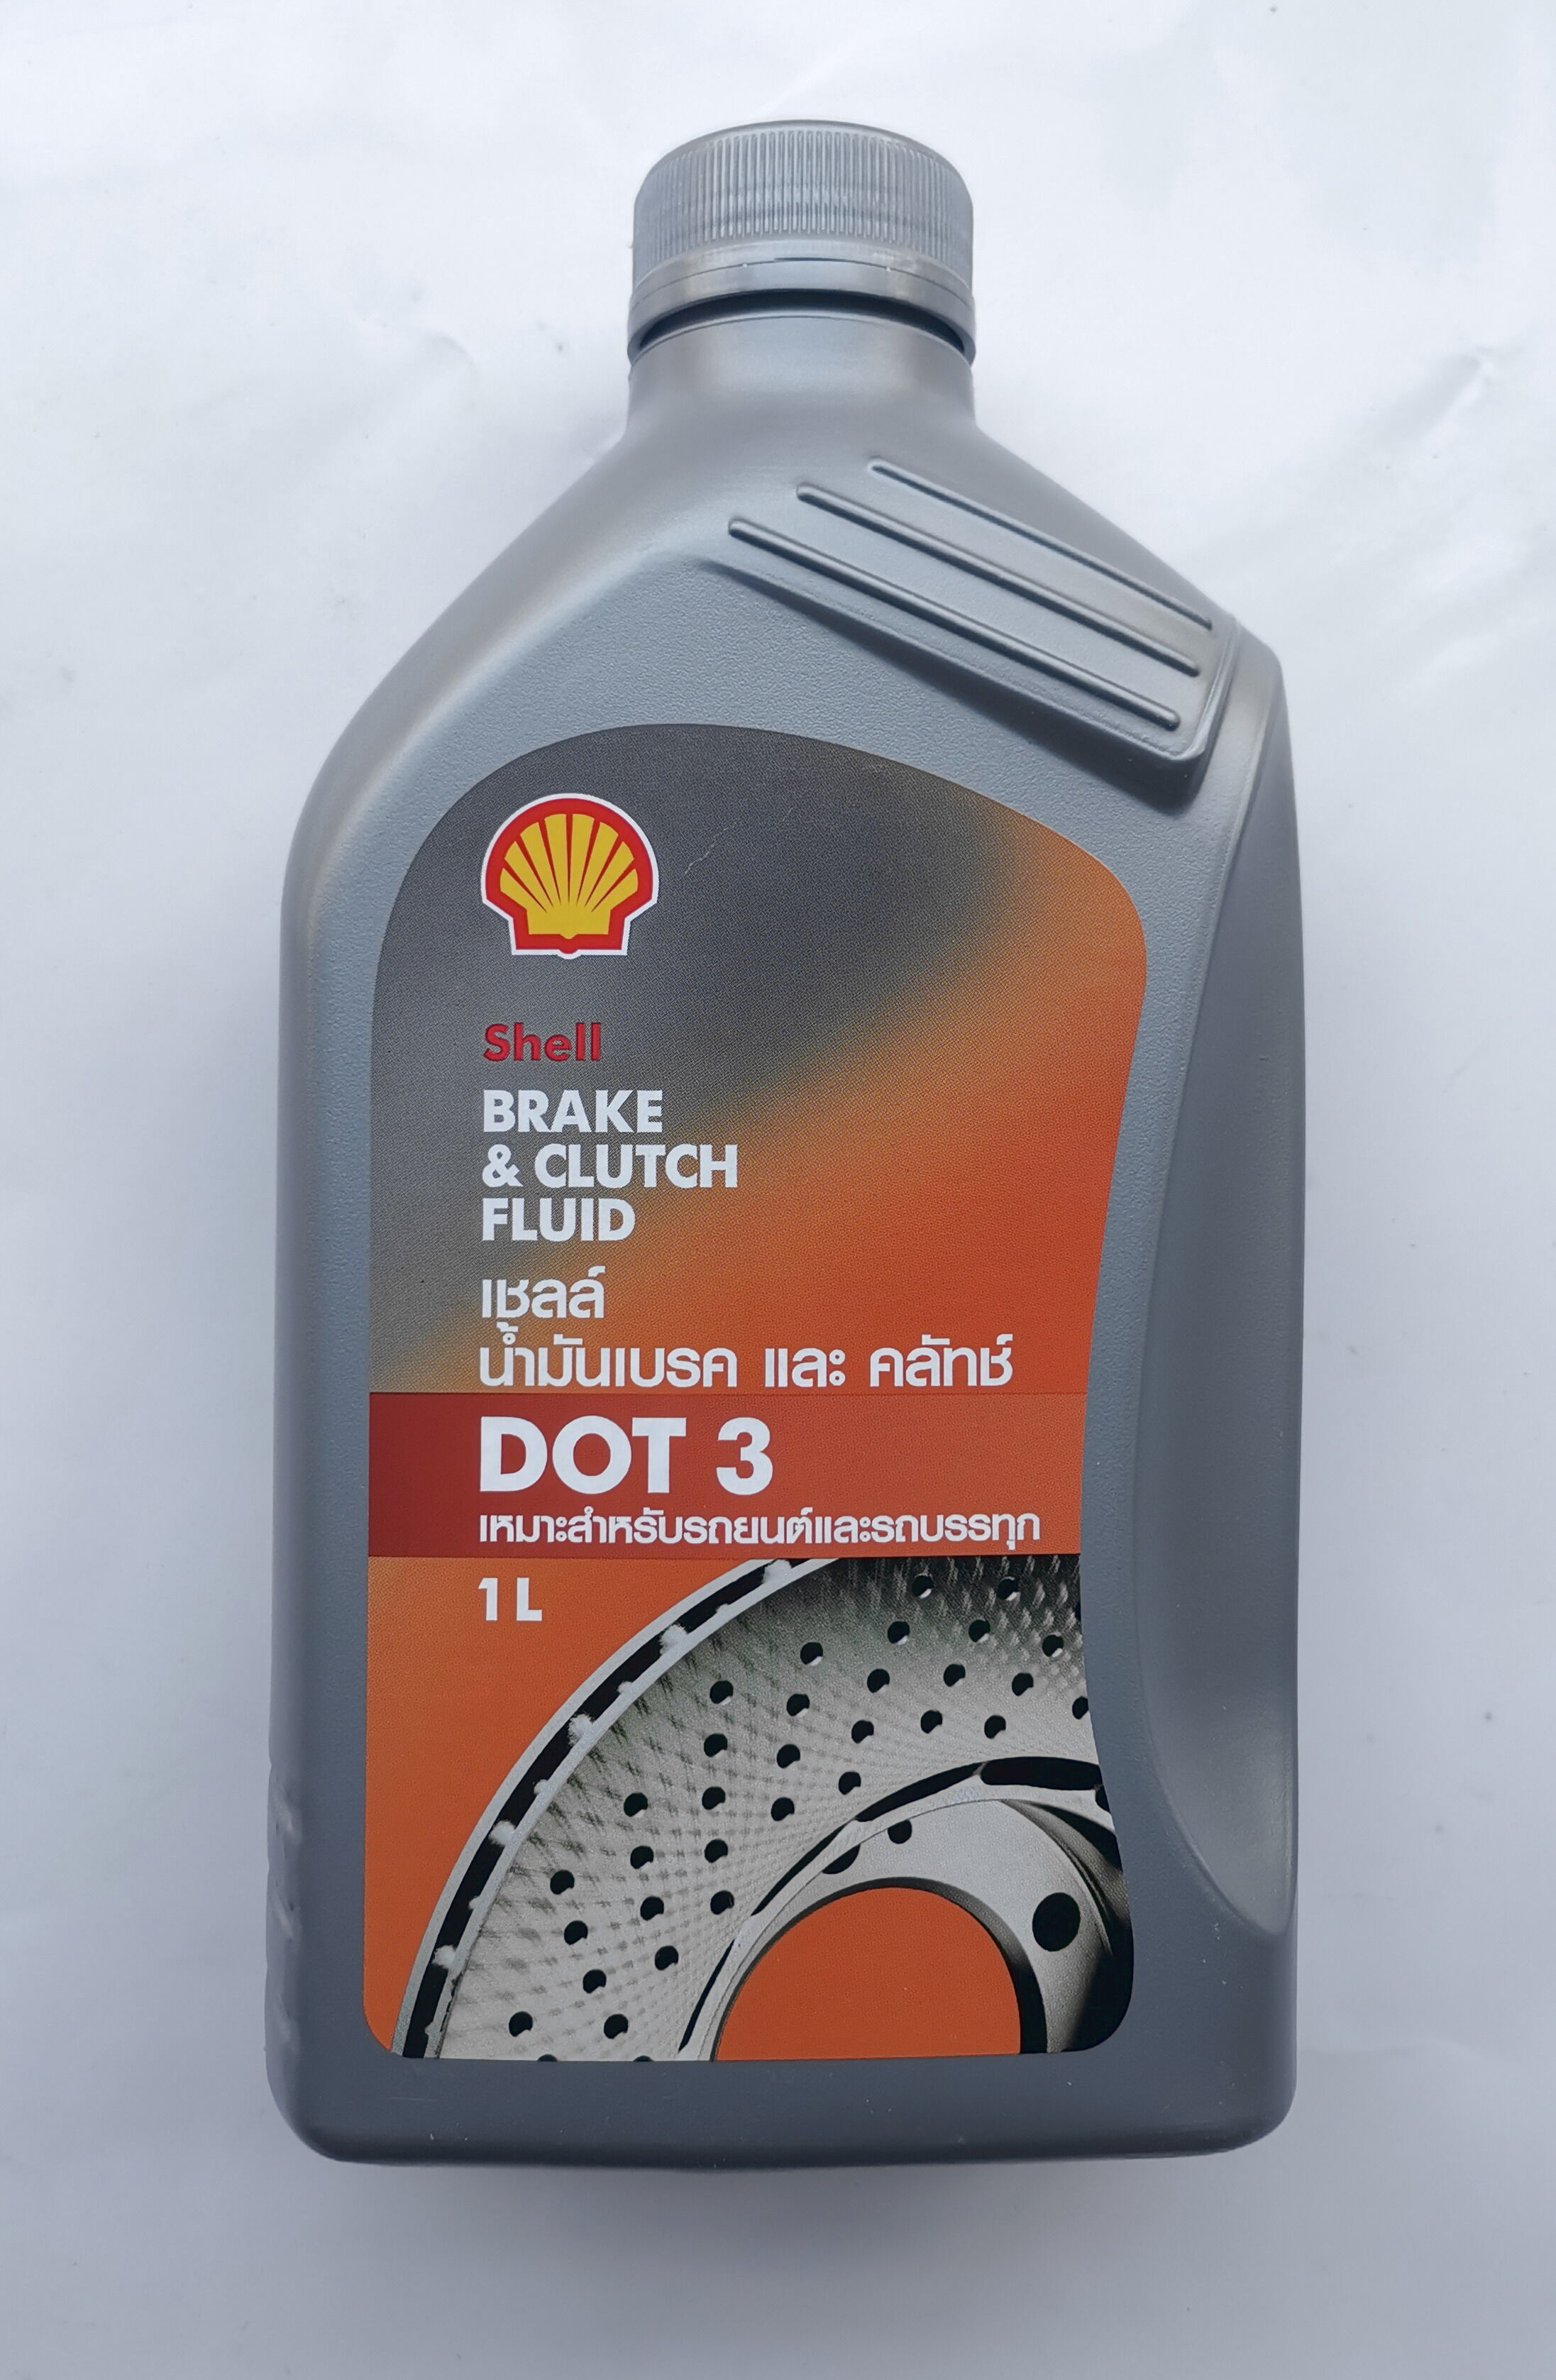 น้ำมันเบรค Shell (เชลล์) Brake & Clutch Fluid DOT 3 ขนาด 1 ลิตร สามารถใช้ได้ทั้งเครื่องยนต์เบ็นซินและดีเซล